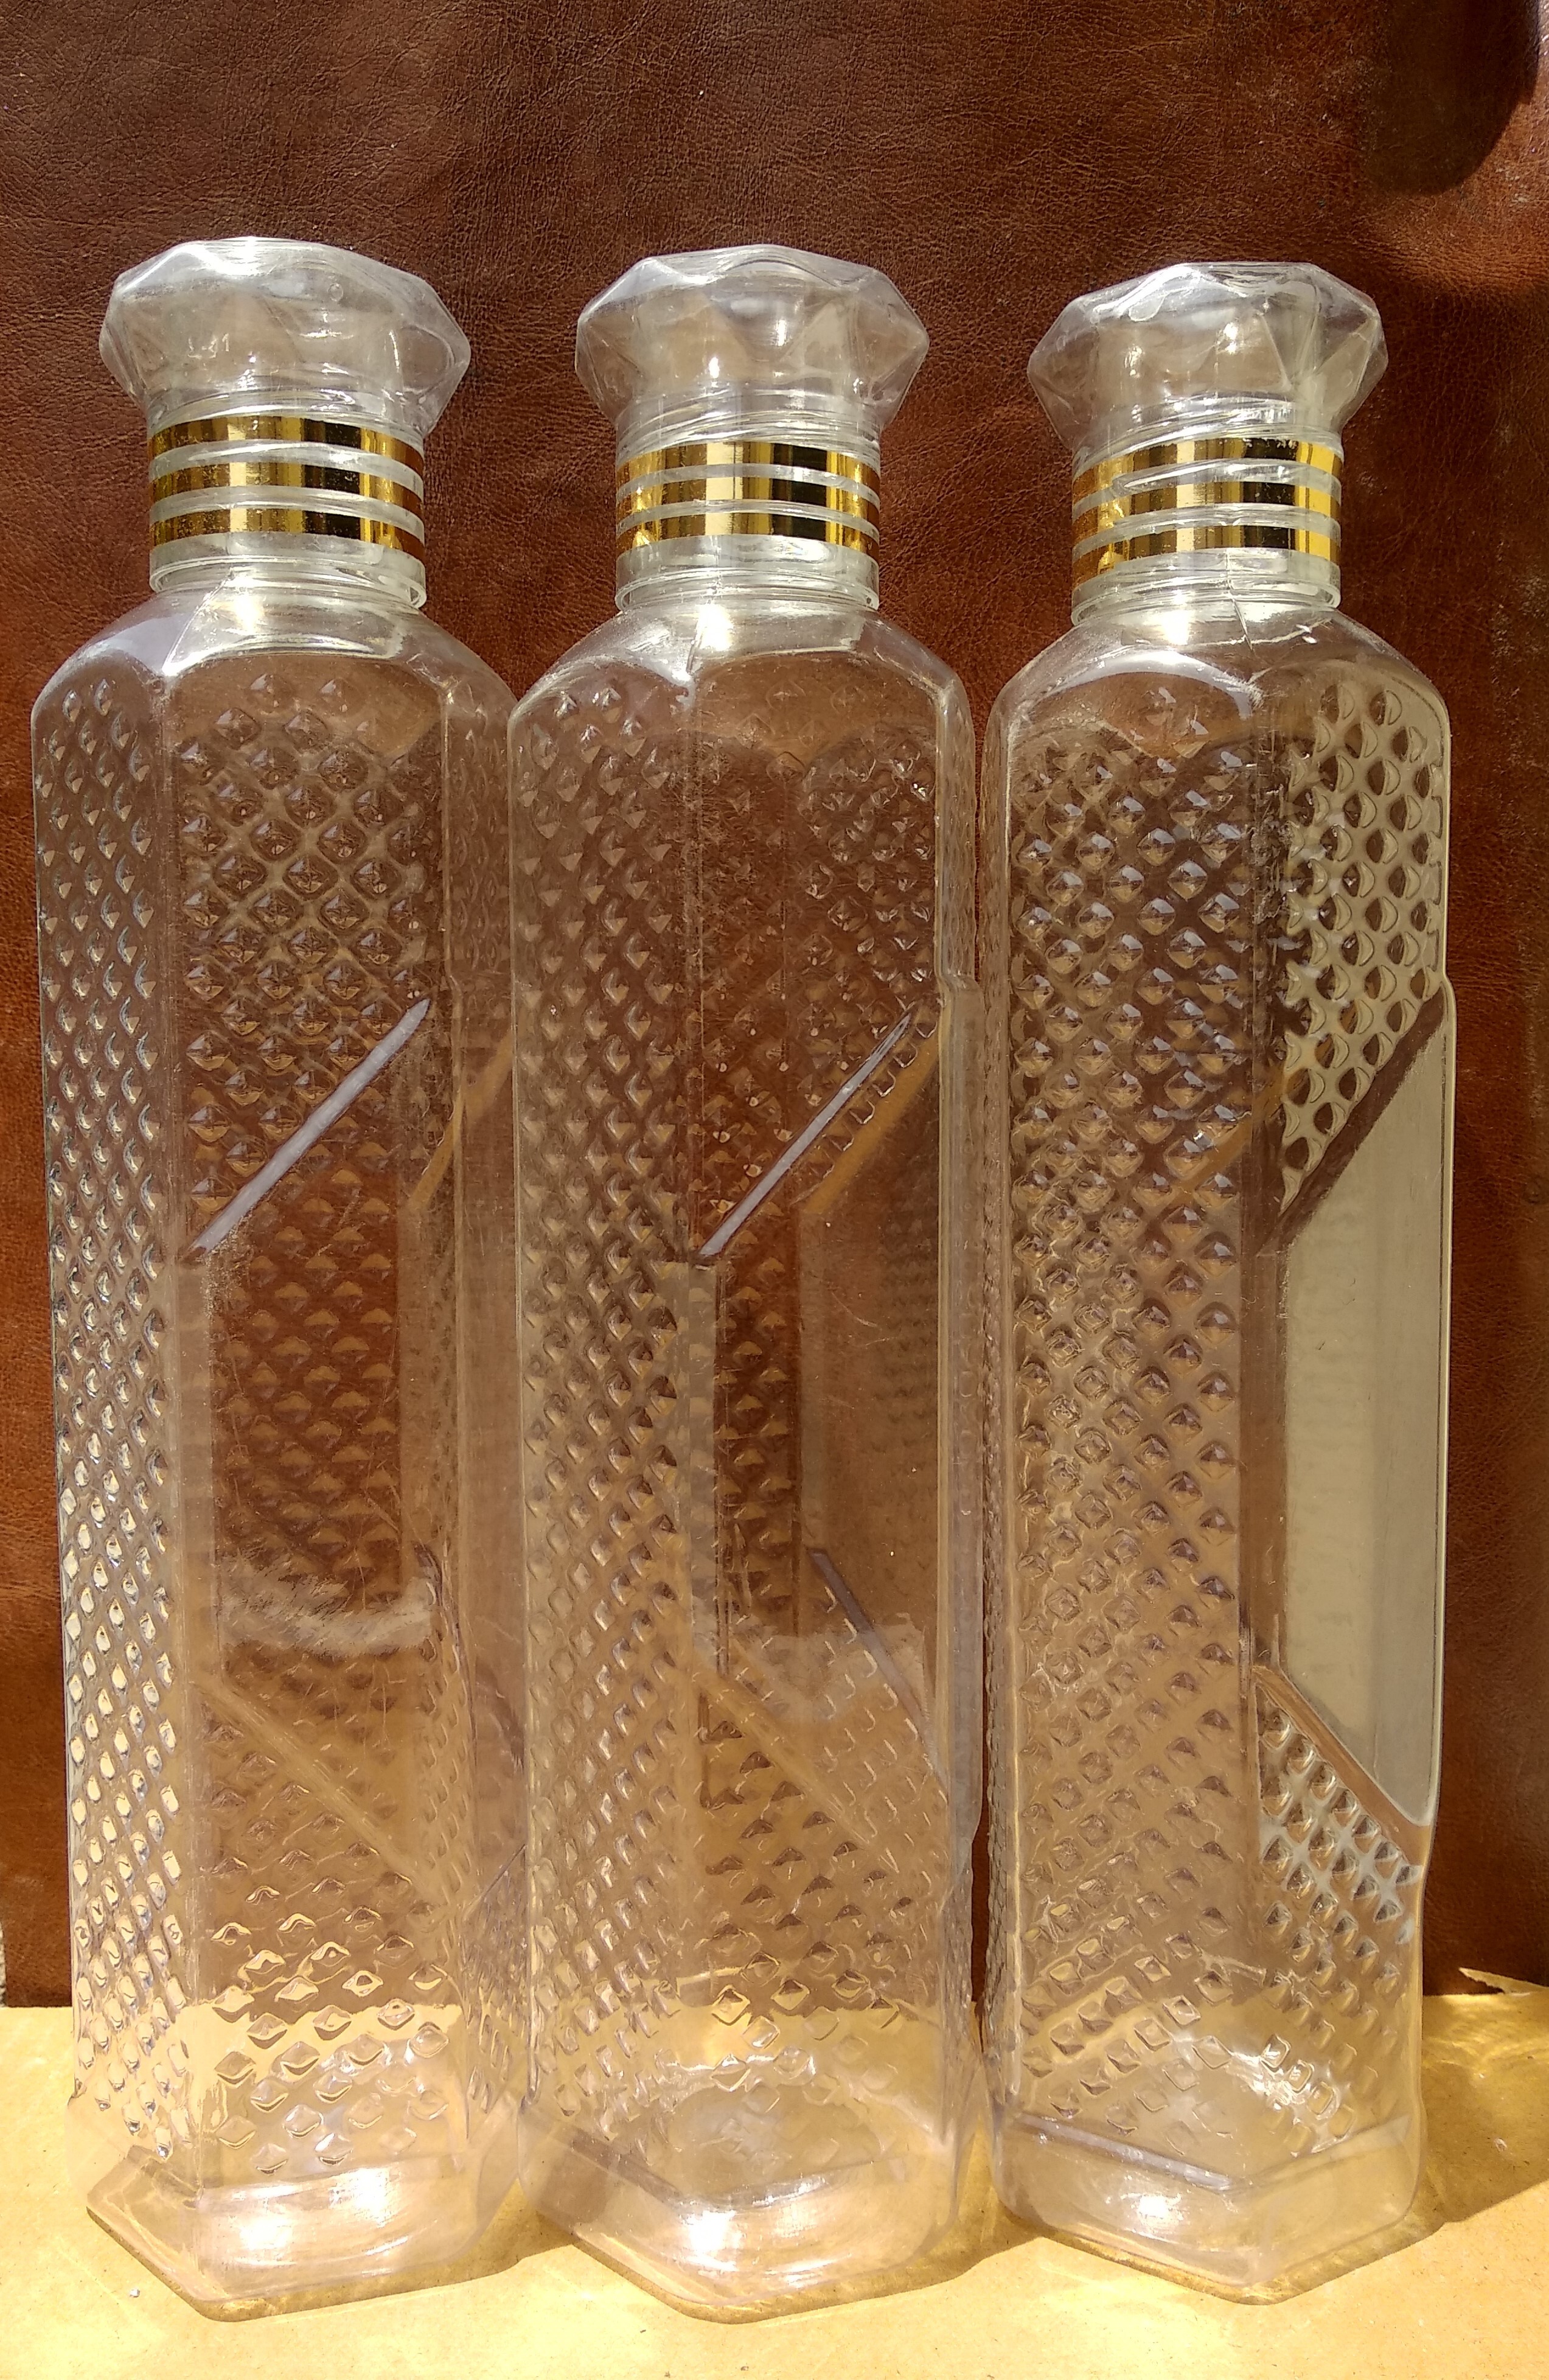 Fridge bottles